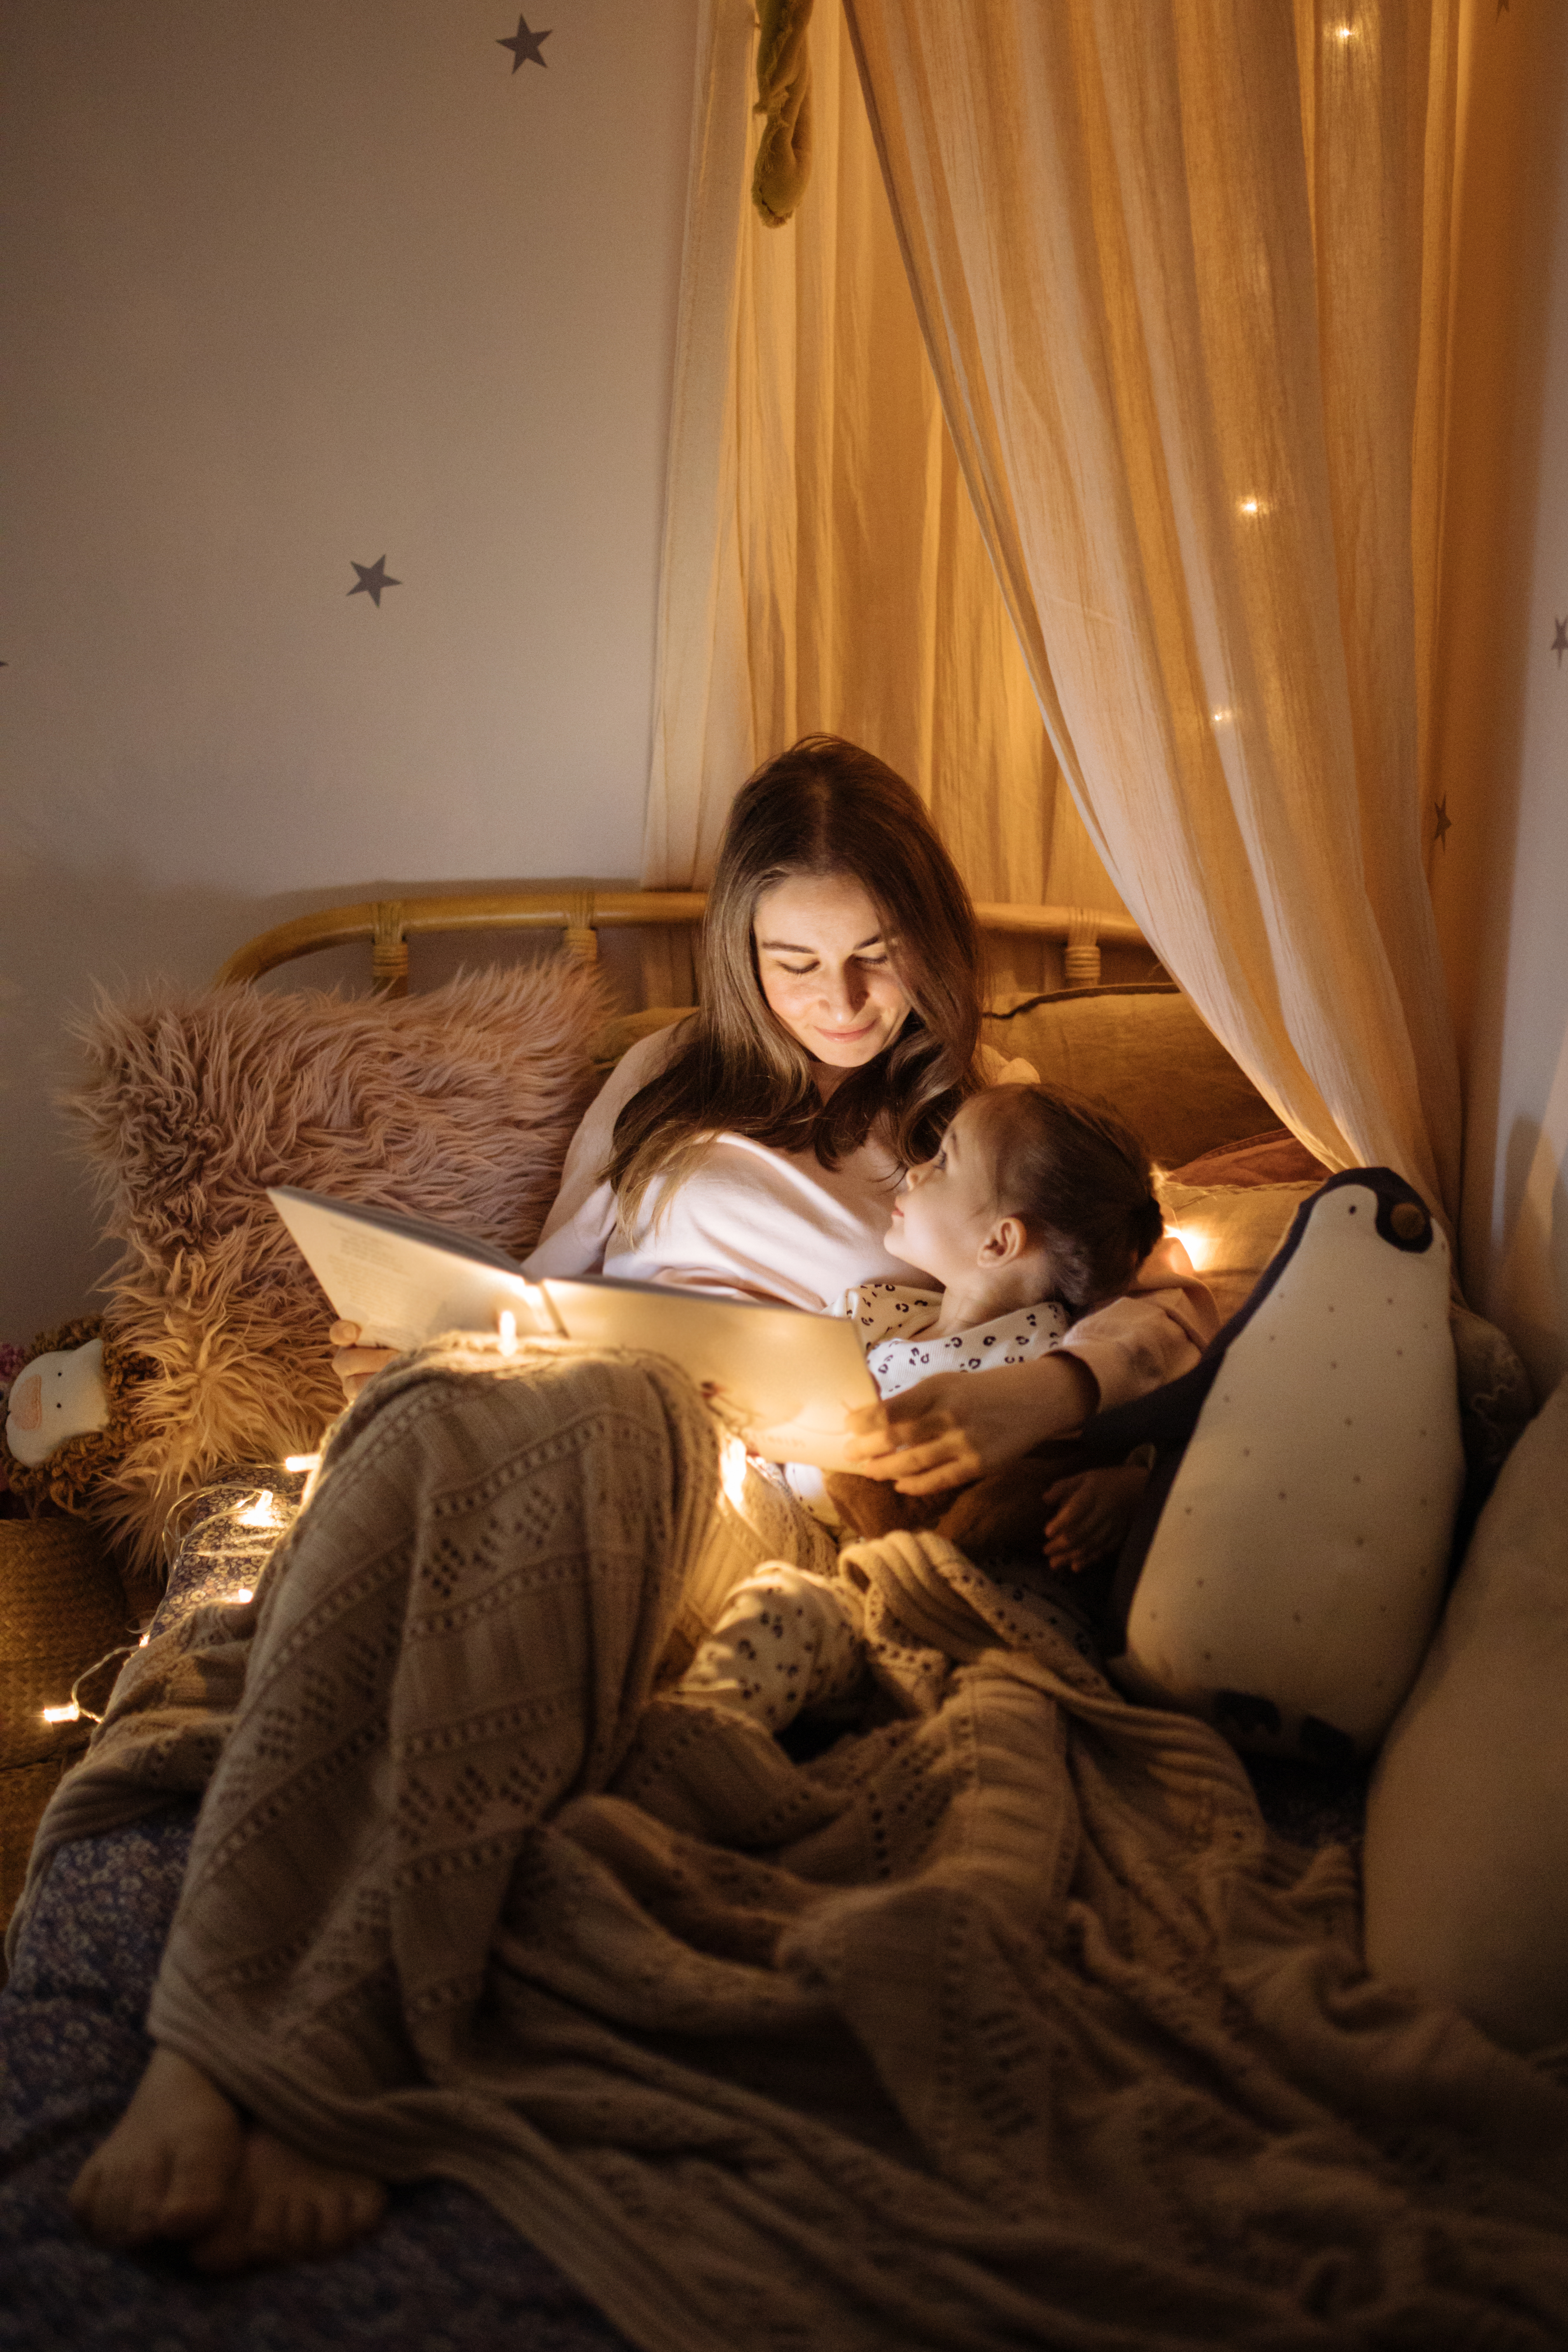 Mutter und Kind lesen ein Buch im Bett, bevor sie schlafen gehen | Quelle: Getty Images